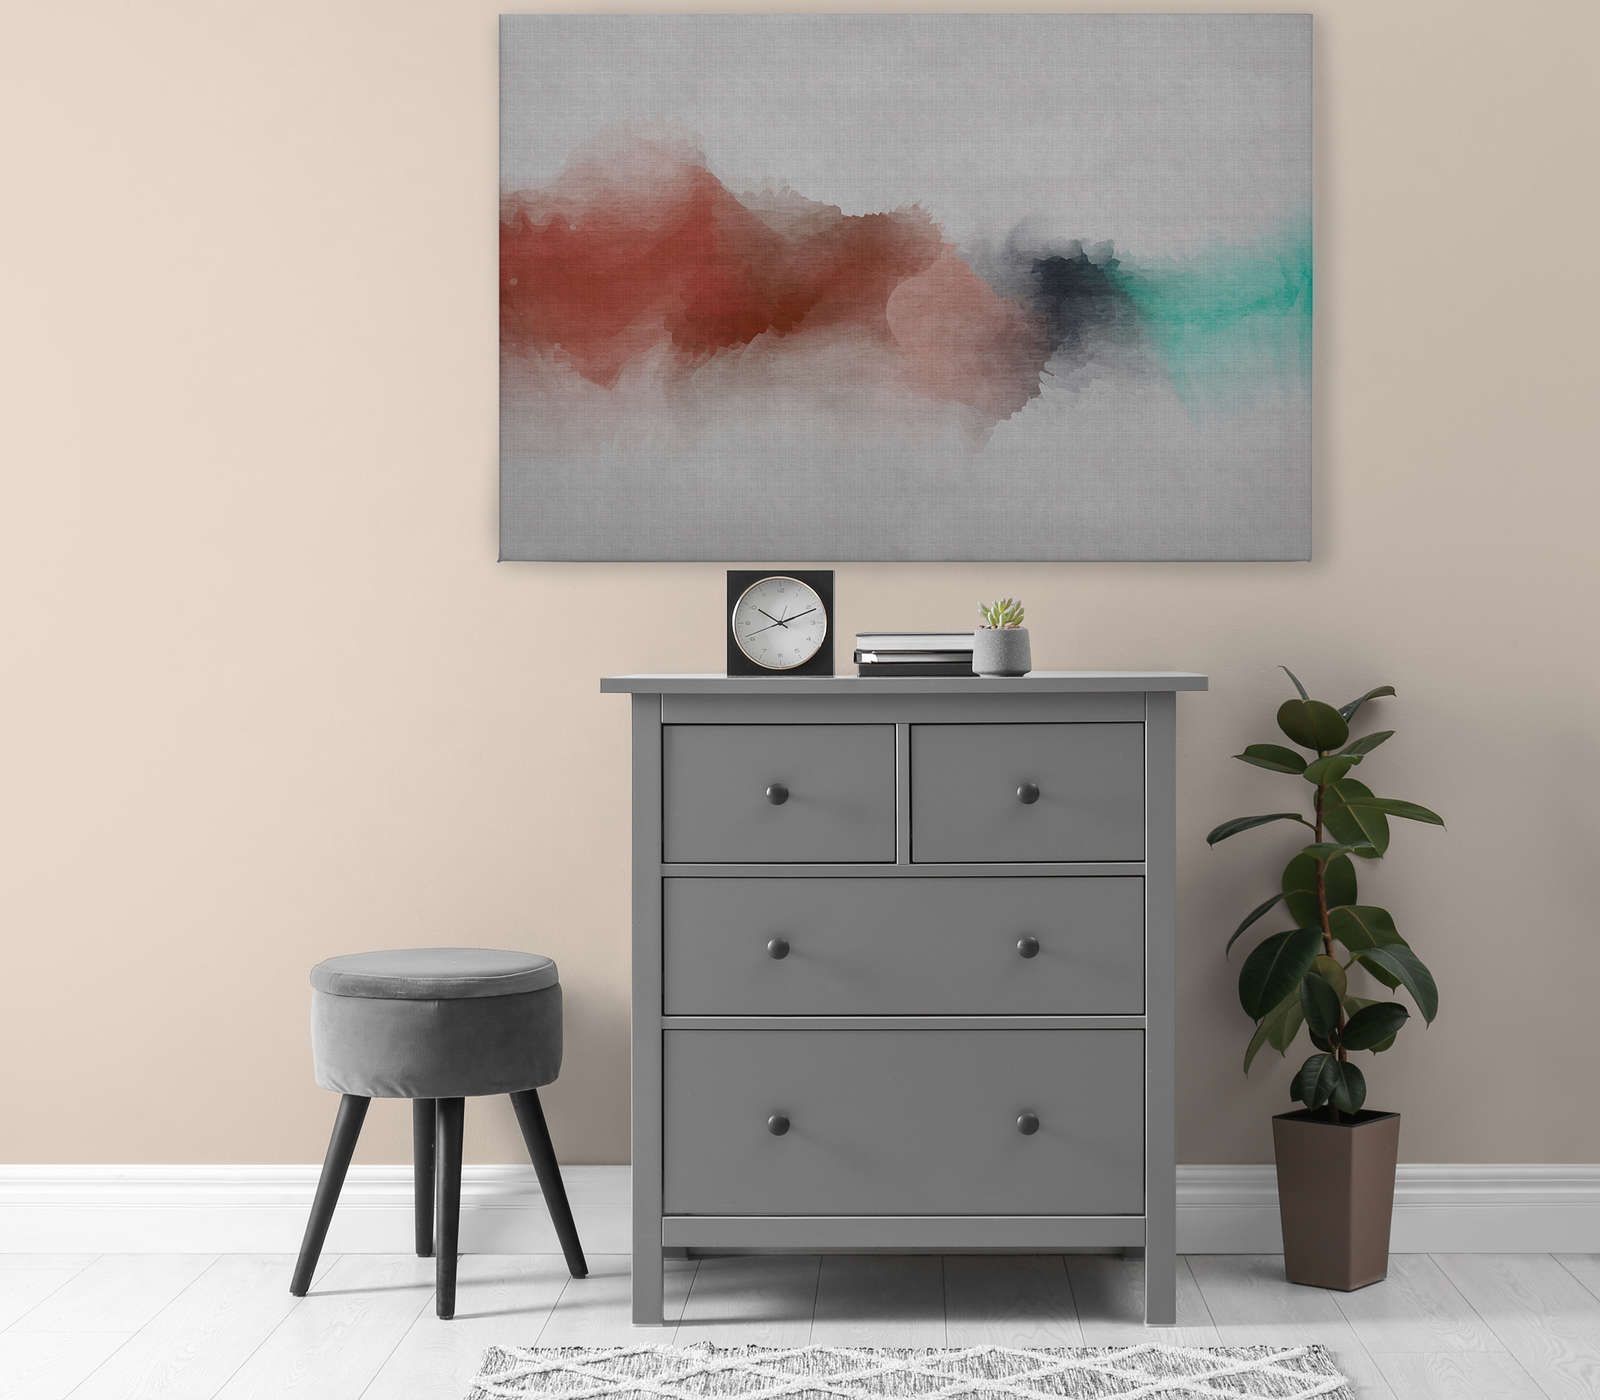             Daydream 2 - Toile aspect lin naturel avec tache de couleur style aquarelle - 1,20 m x 0,80 m
        